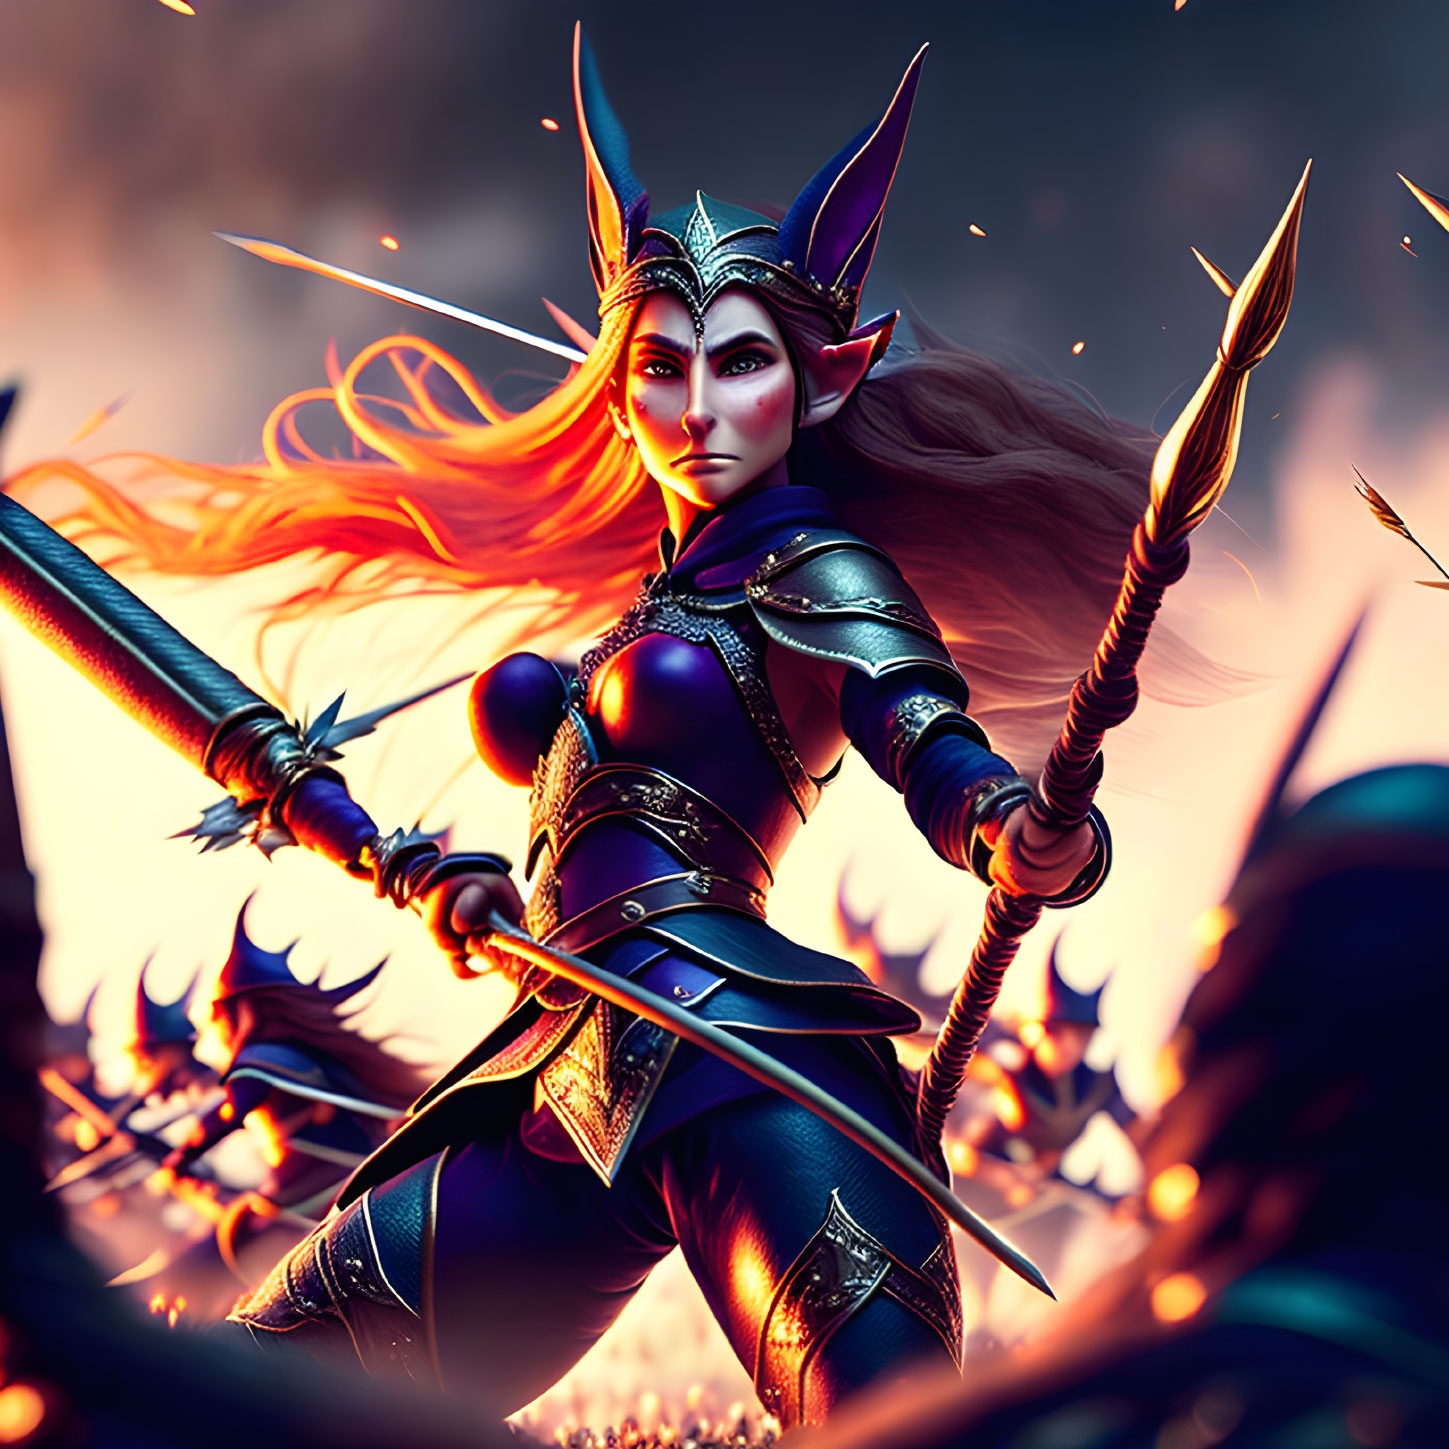 Elf warrior with orange hair wields spear in twilight battlefield